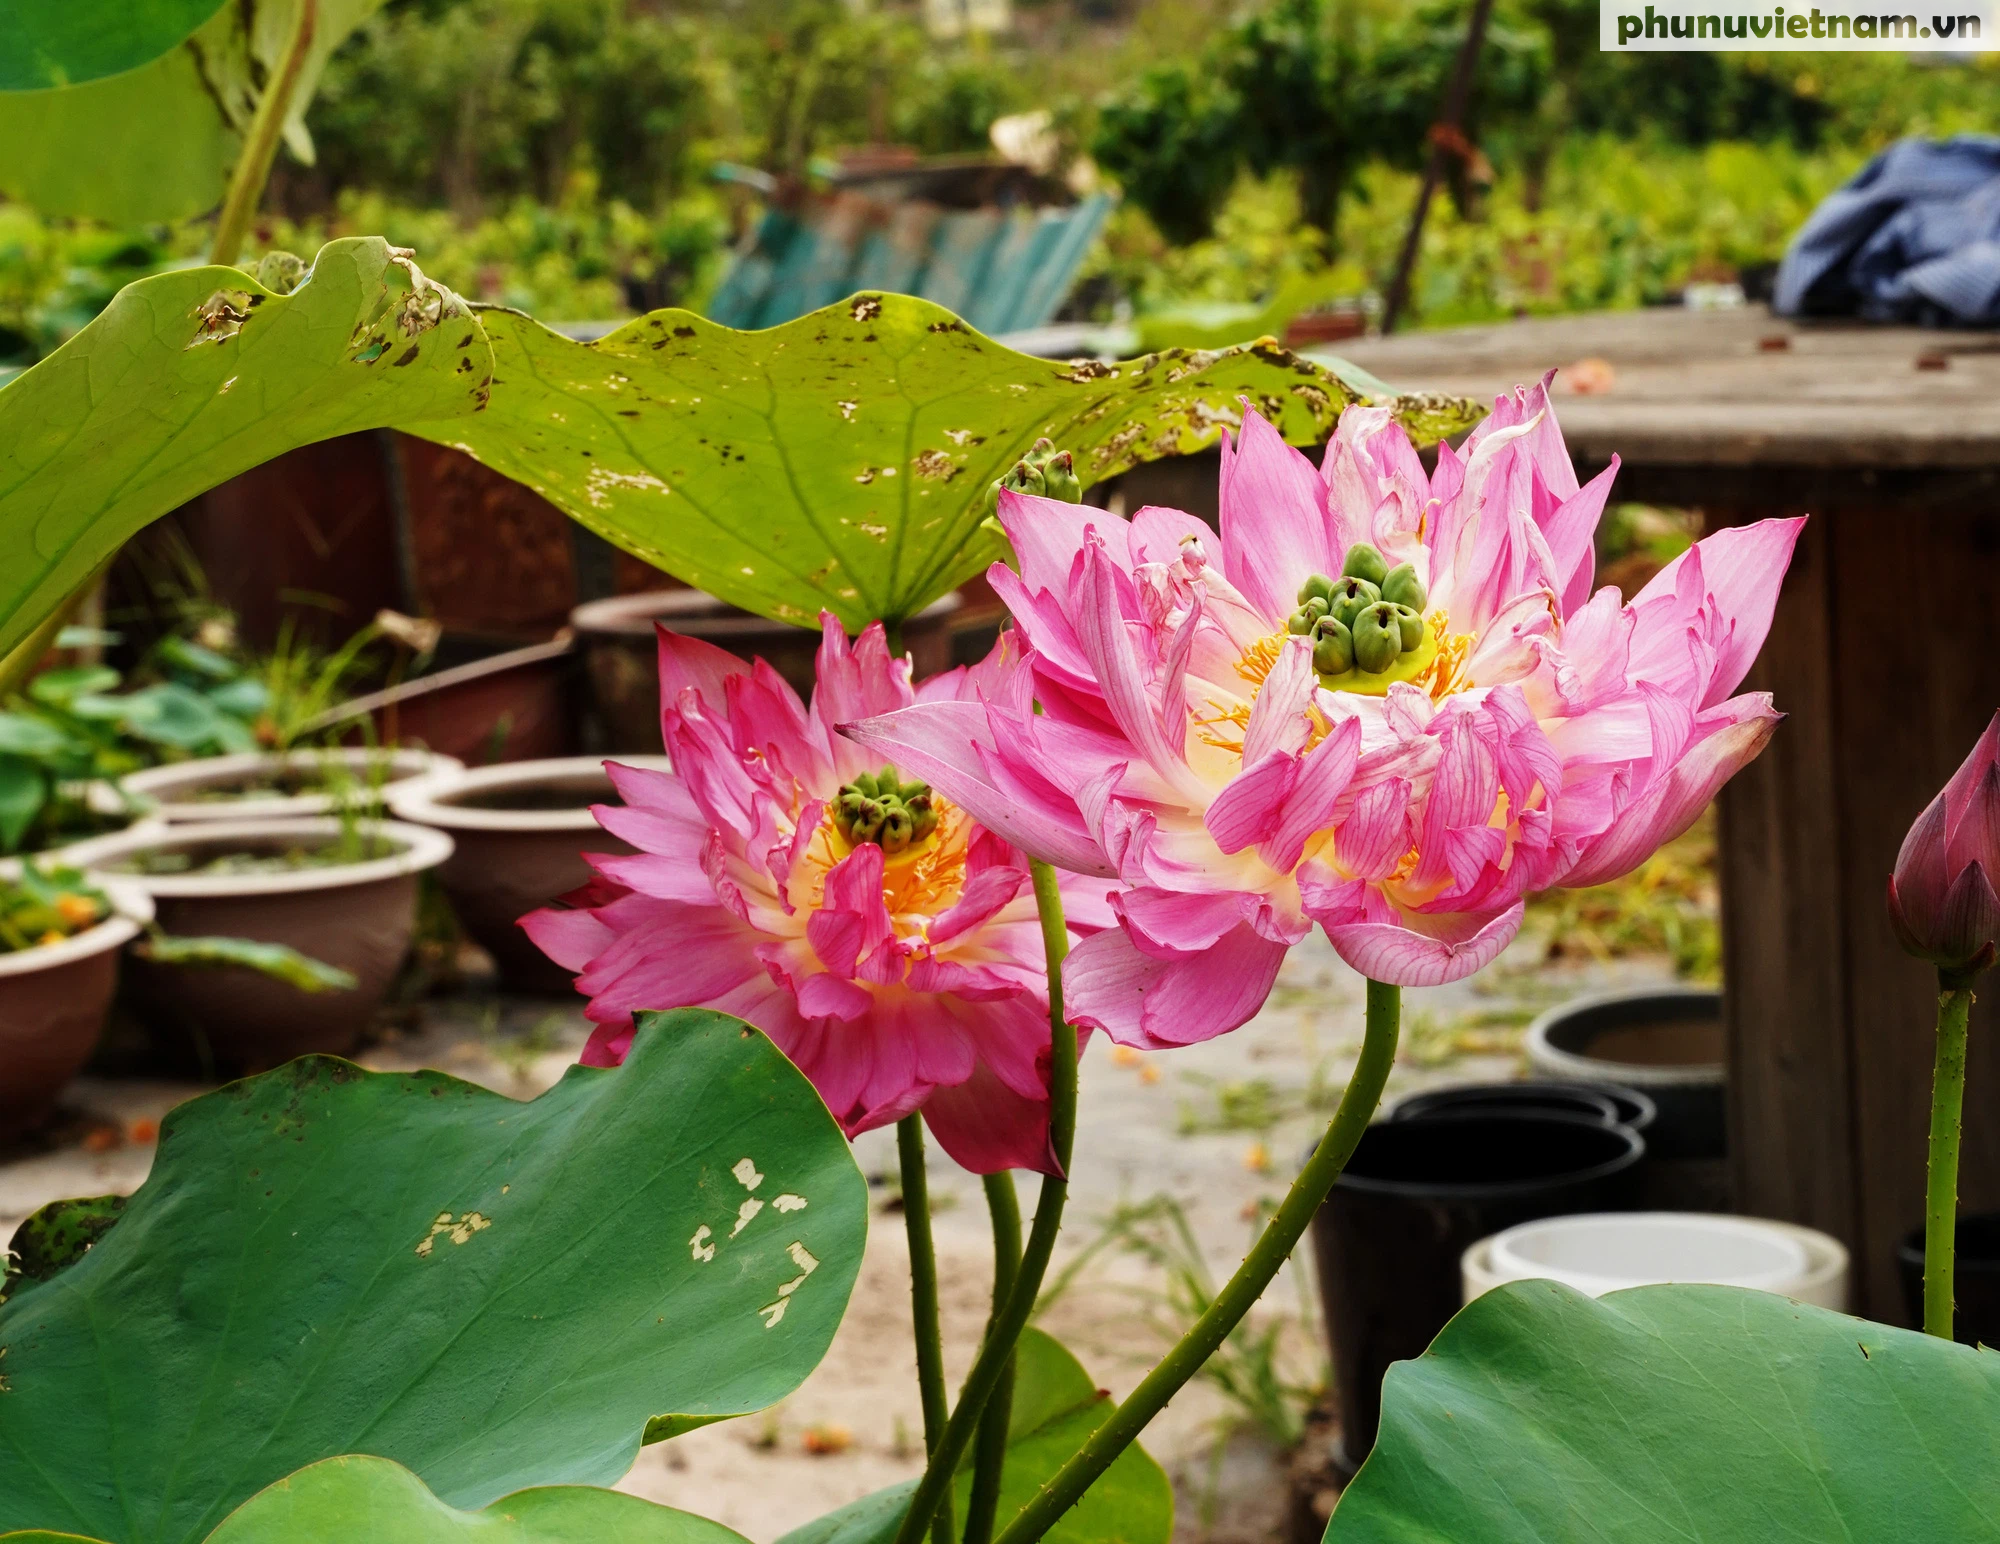 Chiêm ngưỡng những loại hoa sen độc lạ vào mùa tại Hà Nội - Ảnh 10.